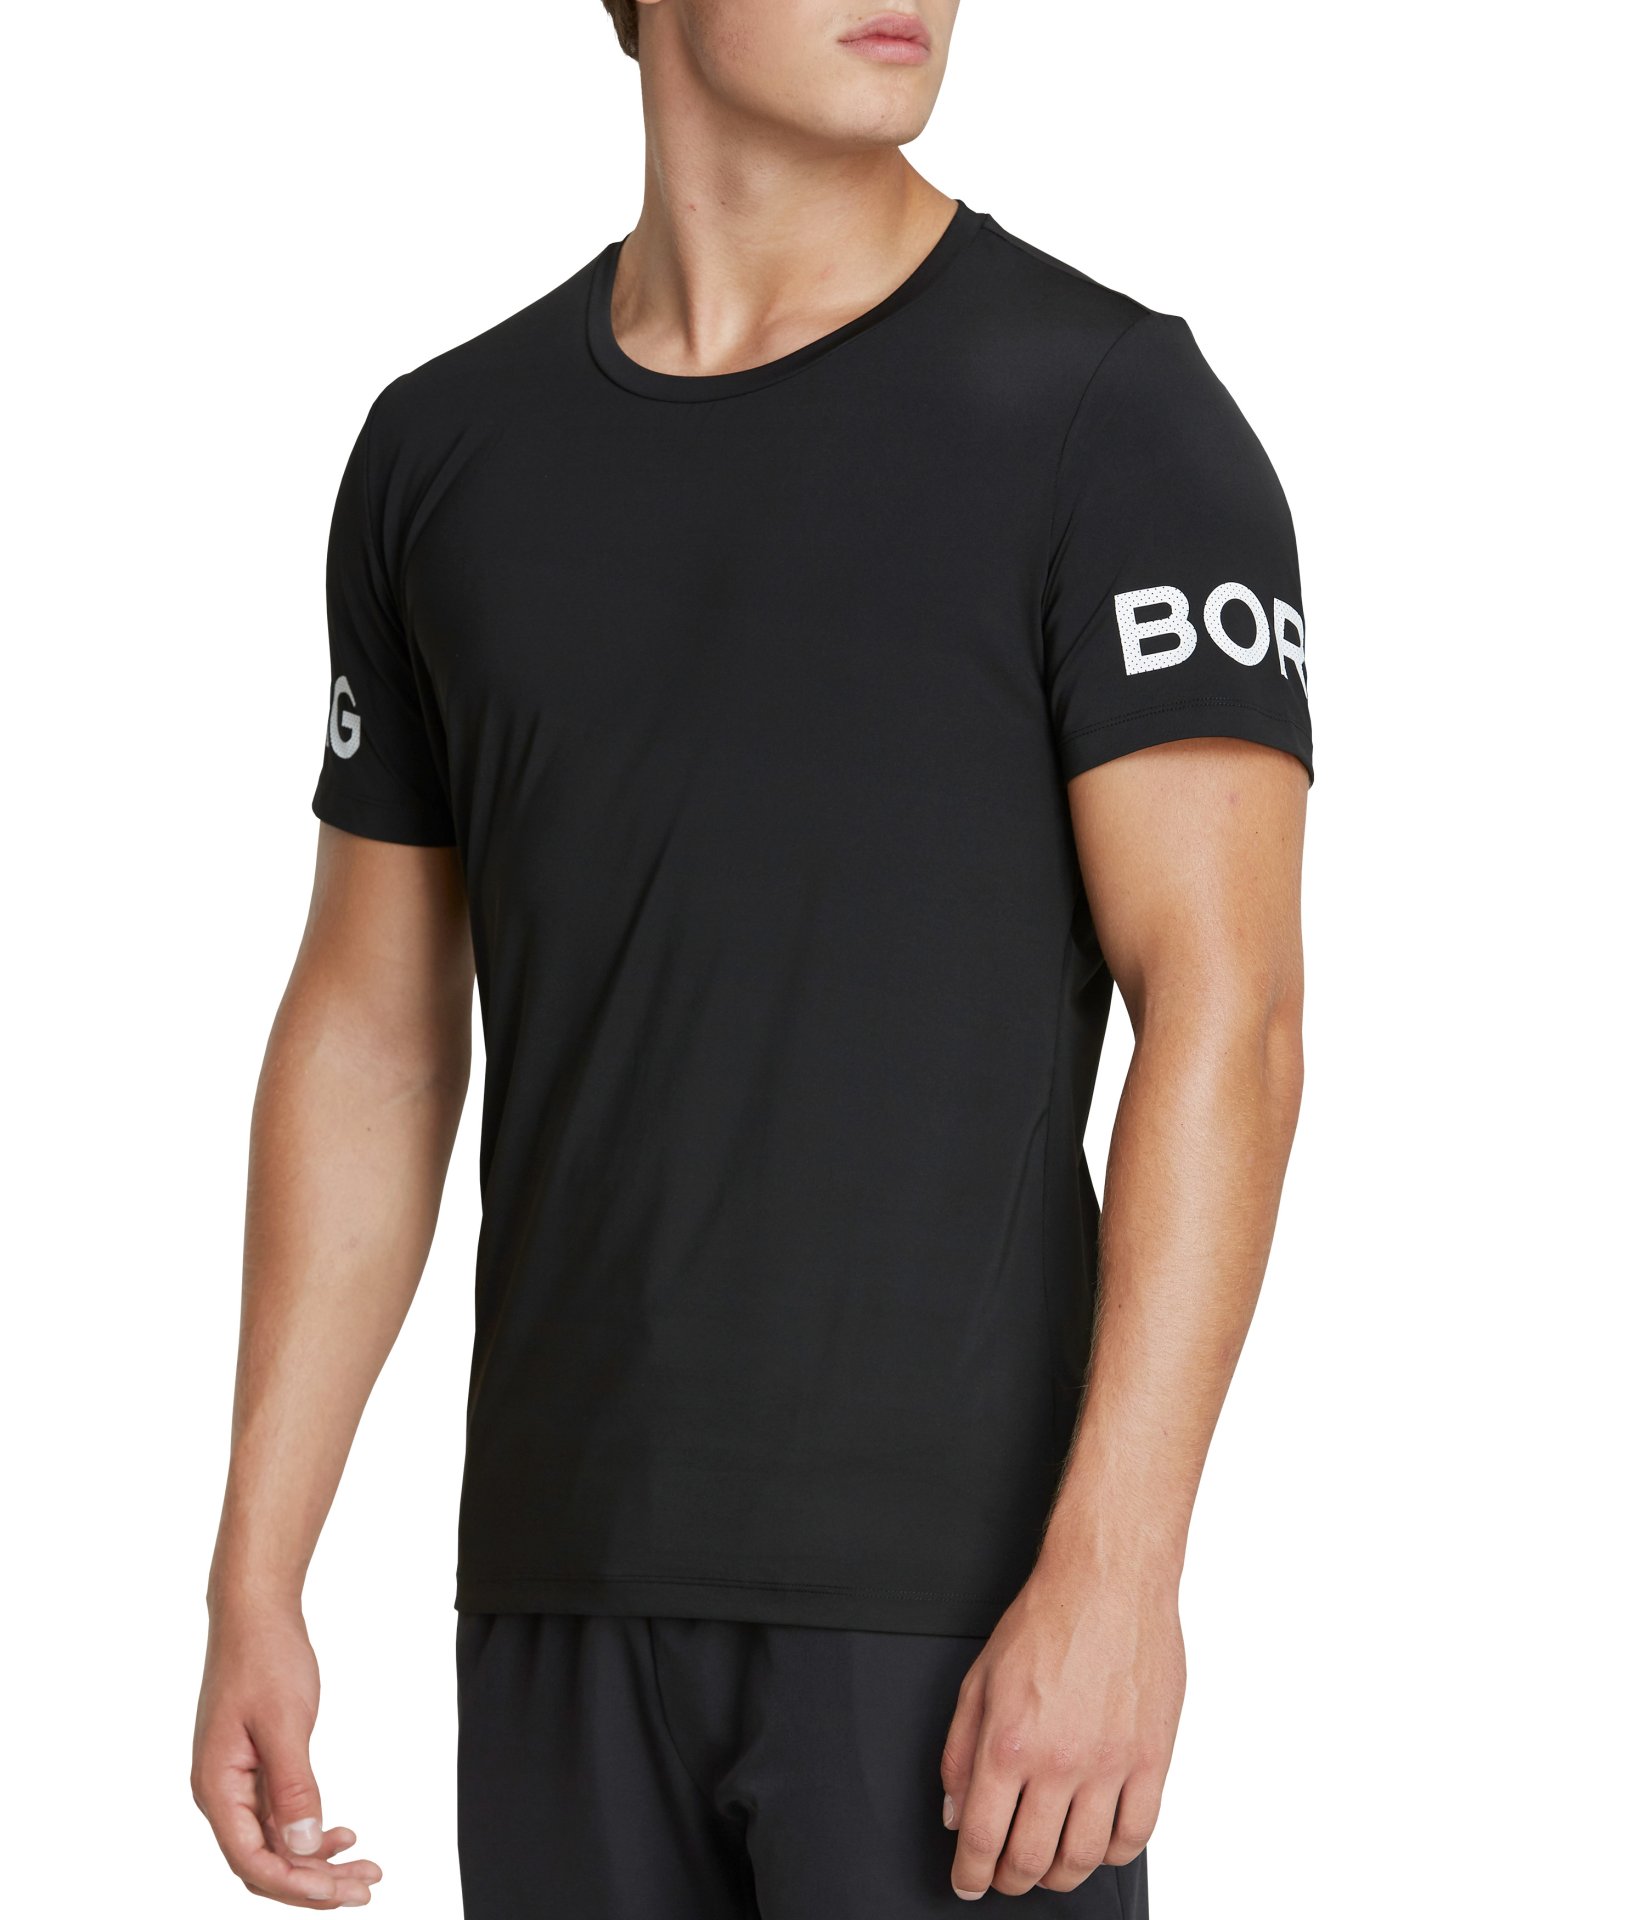 Ανδρικά/Ρούχα/Αθλητικά/T-shirt BJORN BORG - Ανδρικό t-shirt BJORN BORG μαύρο